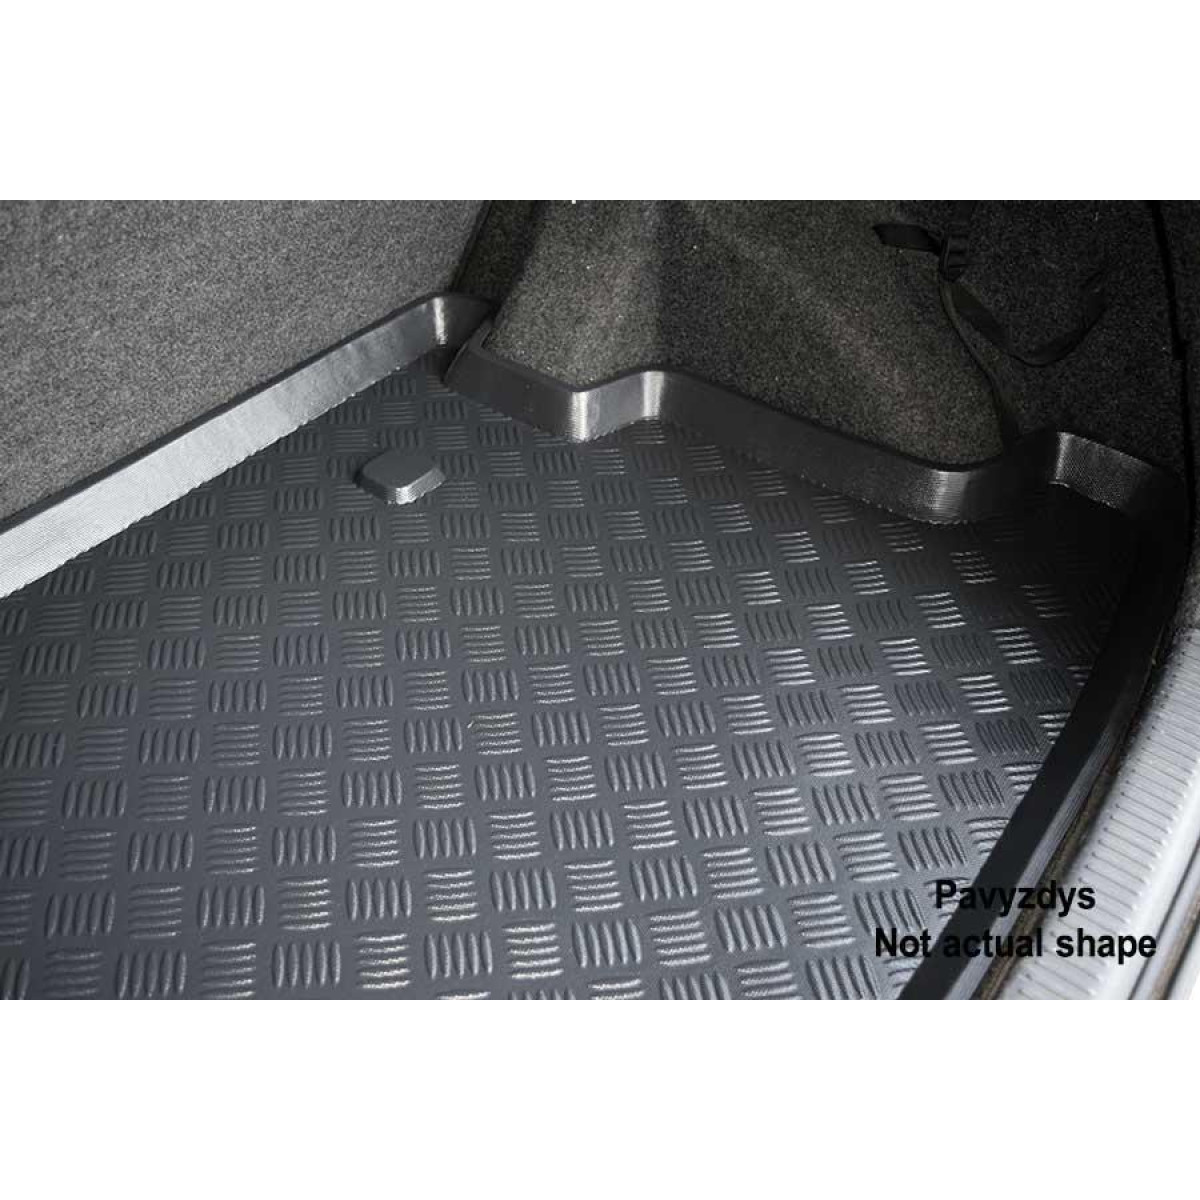 Plastikinis Bagažinės kilimėlis Volkswagen Sharan 7 vietų nuo 2009m. (viršutinis)